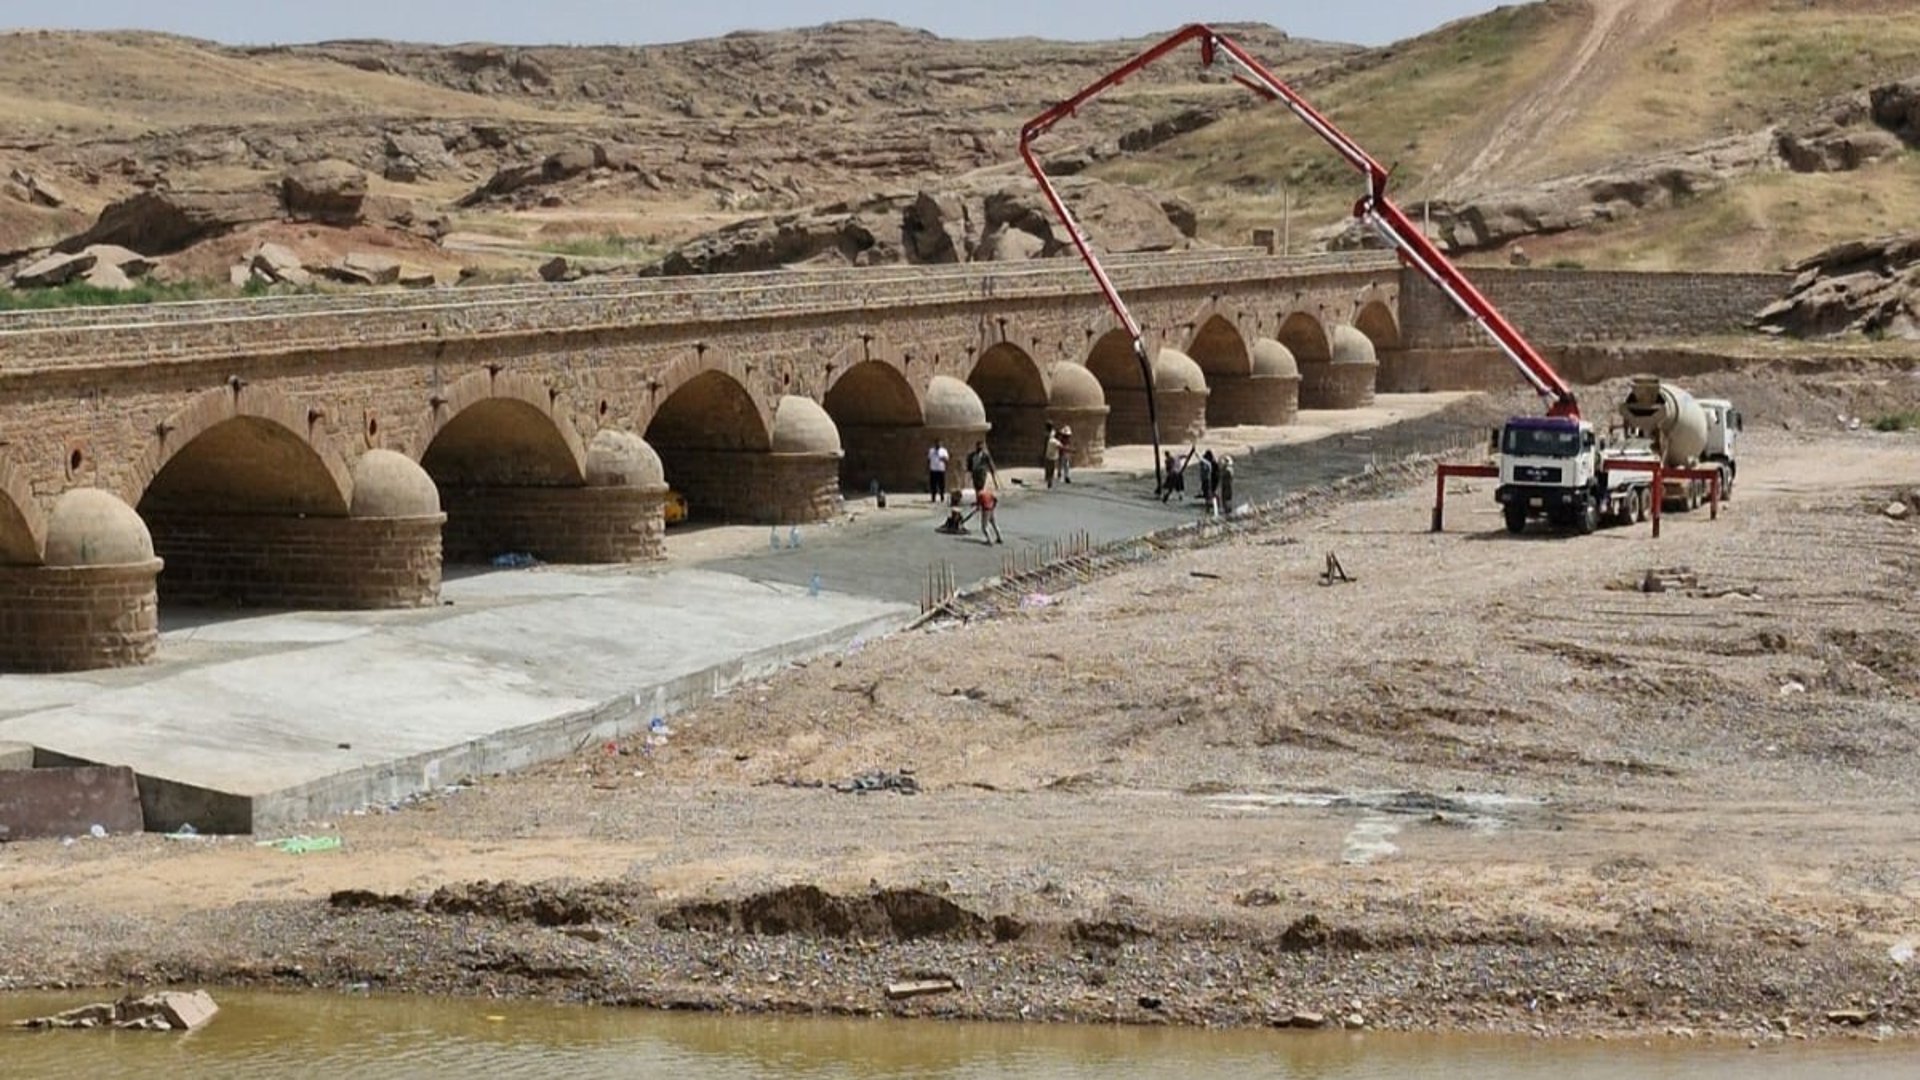 صور: الخبراء الأتراك باشروا بإعادة الحياة إلى أقدم جسر عثماني في كركوك